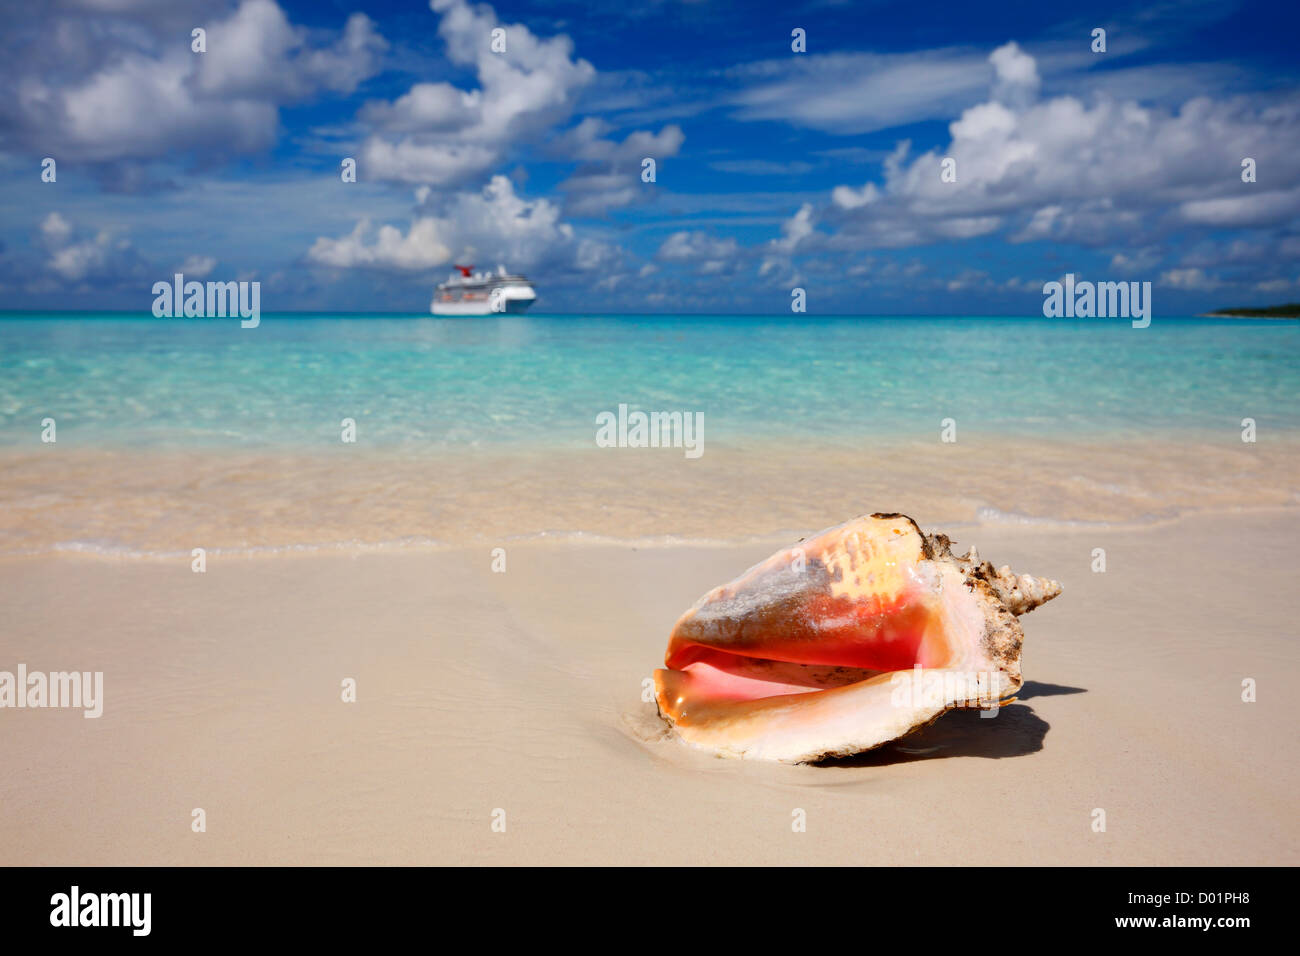 Playa de arena del Caribe con la reina caracola delante y Cruise Line Ship en el horizonte. Foto de stock